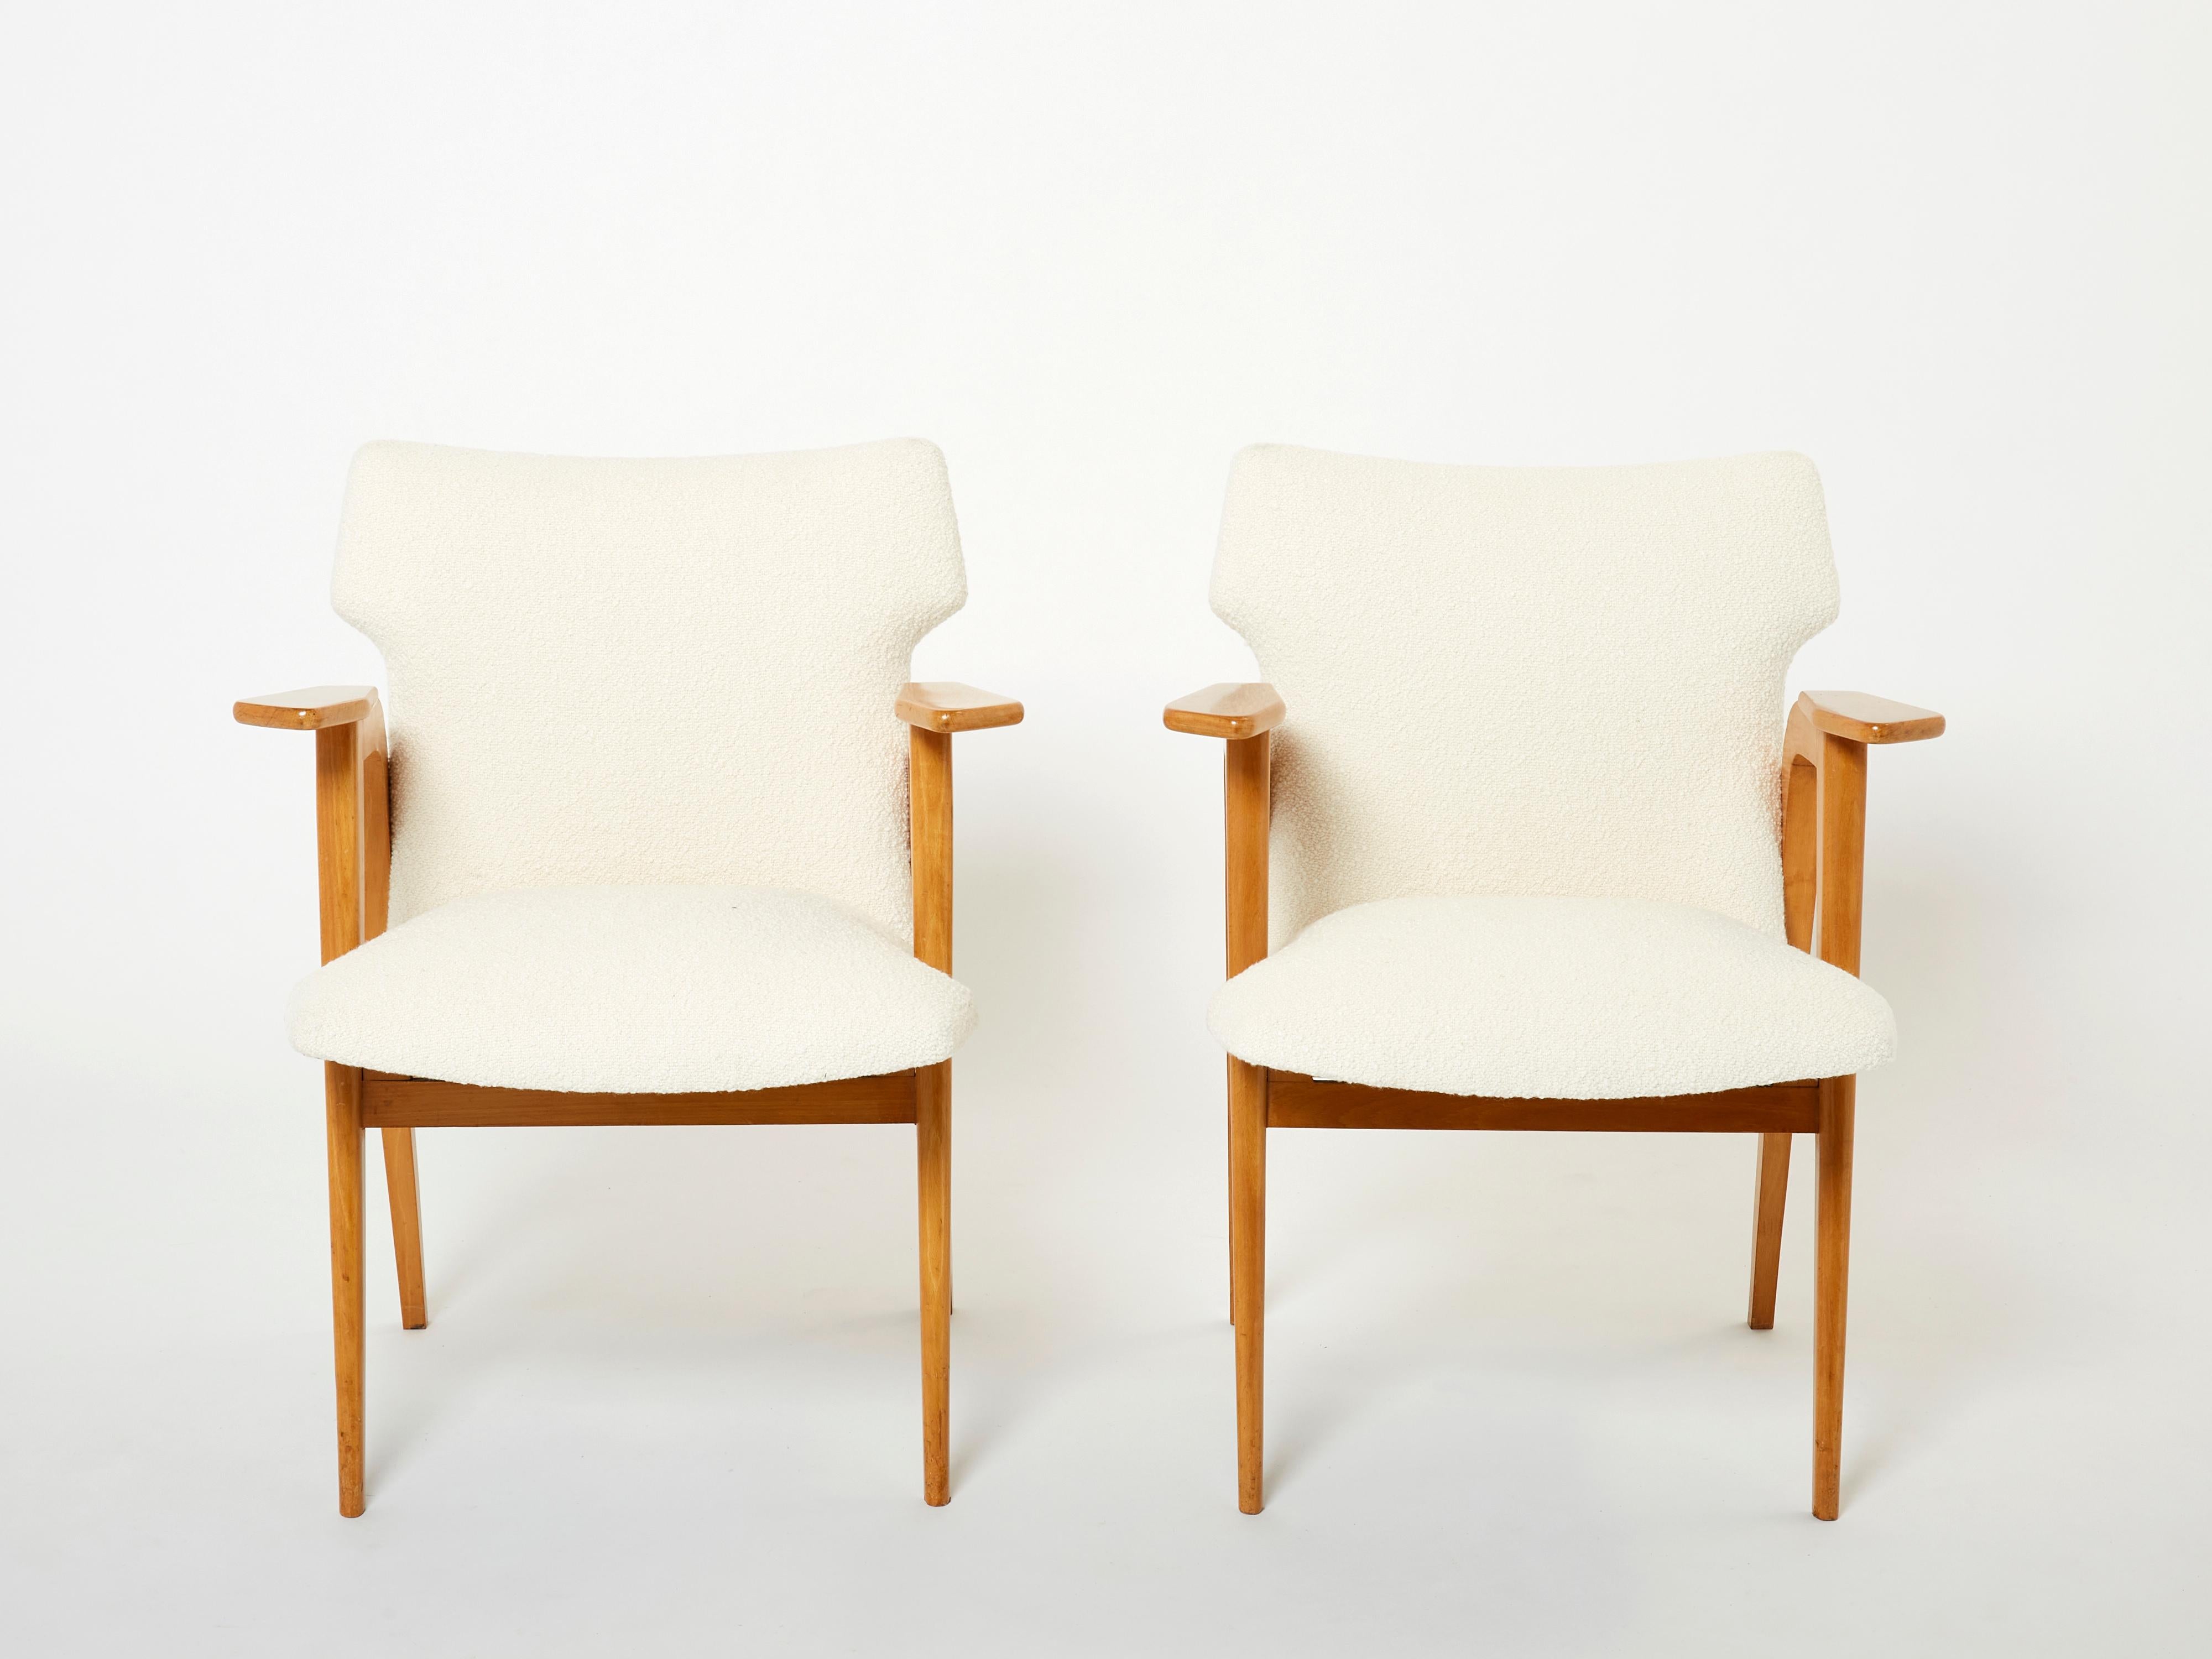 Ces élégants fauteuils compas ajouteront certainement un élément de modernisme chic à n'importe quelle pièce de votre maison. Conçus par Roger Landault à la fin des années 1950, avec des cadres en chêne massif, ces fauteuils sont de merveilleux